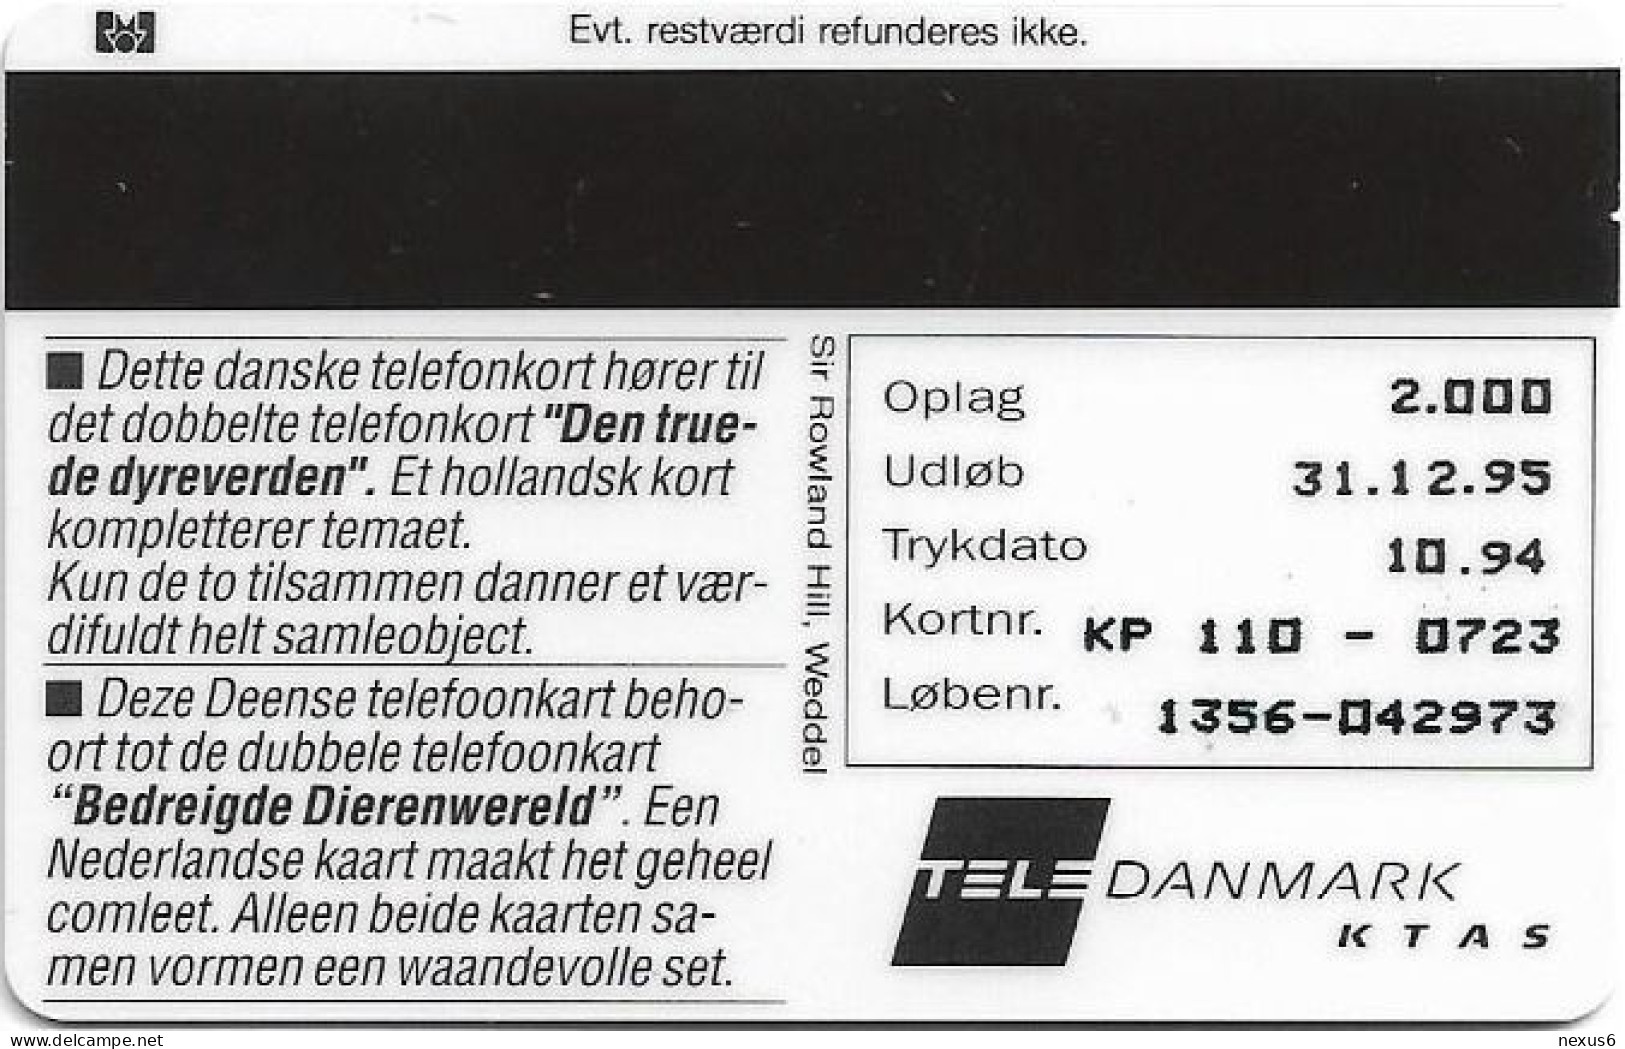 Denmark - KTAS - Crocodile, Krokodille - TDKP110 - 10.1994, 5kr, 2.000ex, Used - Danemark